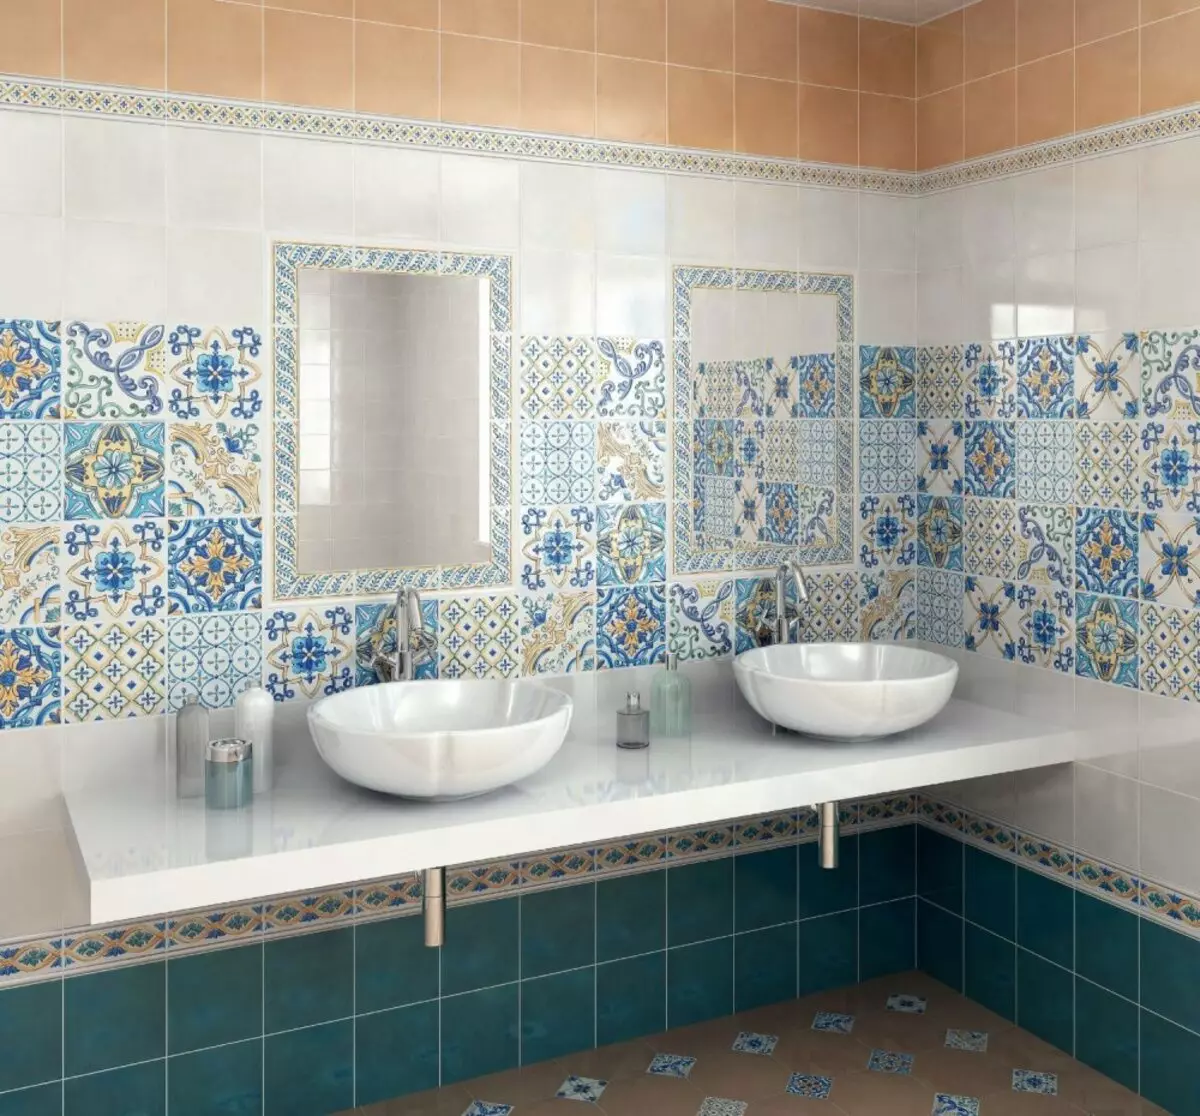 Ruská kúpeľňa Dlaždice: Keramické a iné dlaždice pre kúpeľňu výrobcov Ruska. Návrh ruských výrobných dlaždíc 10124_23